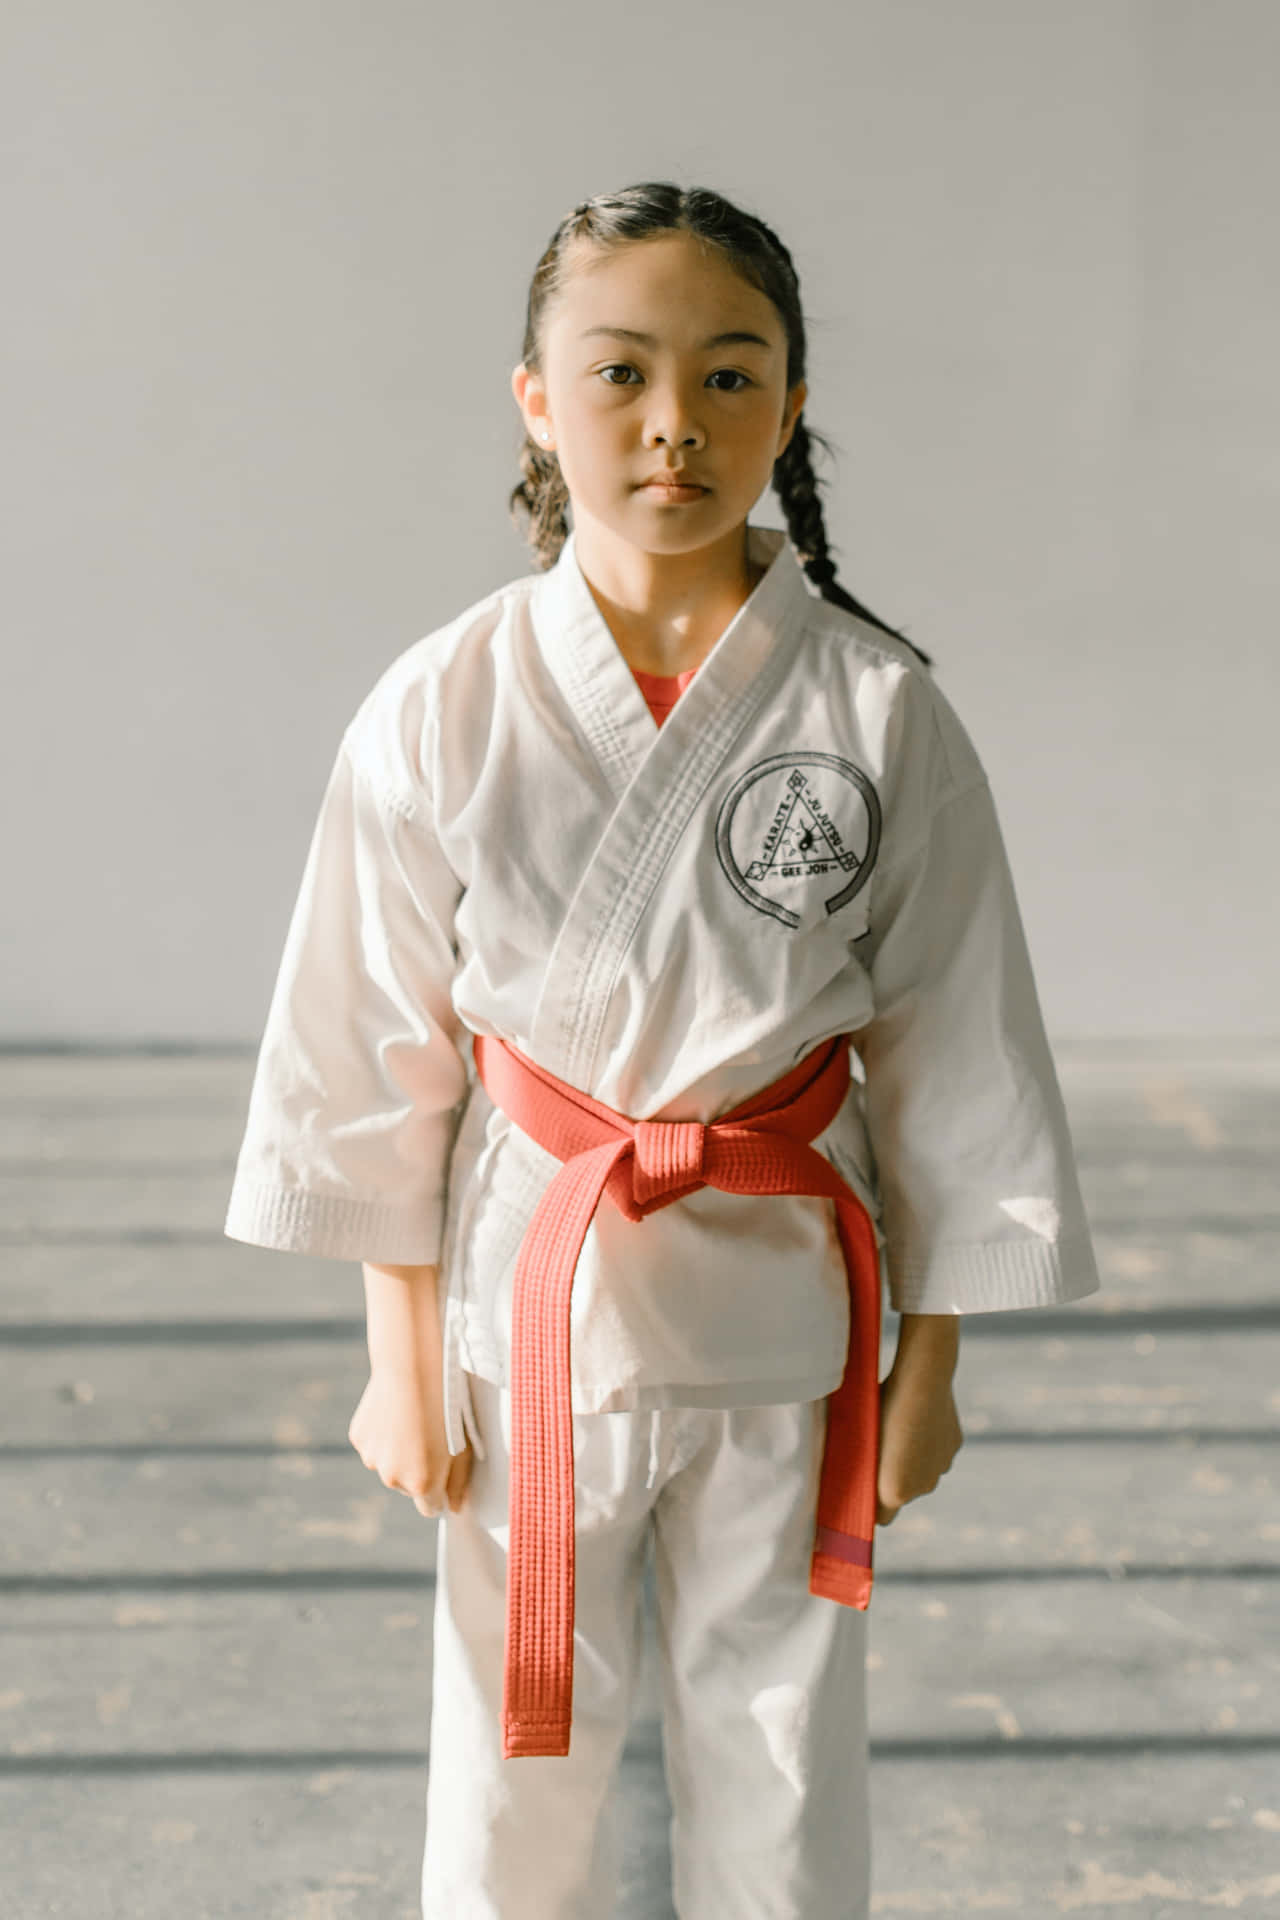 Fotodi Karate